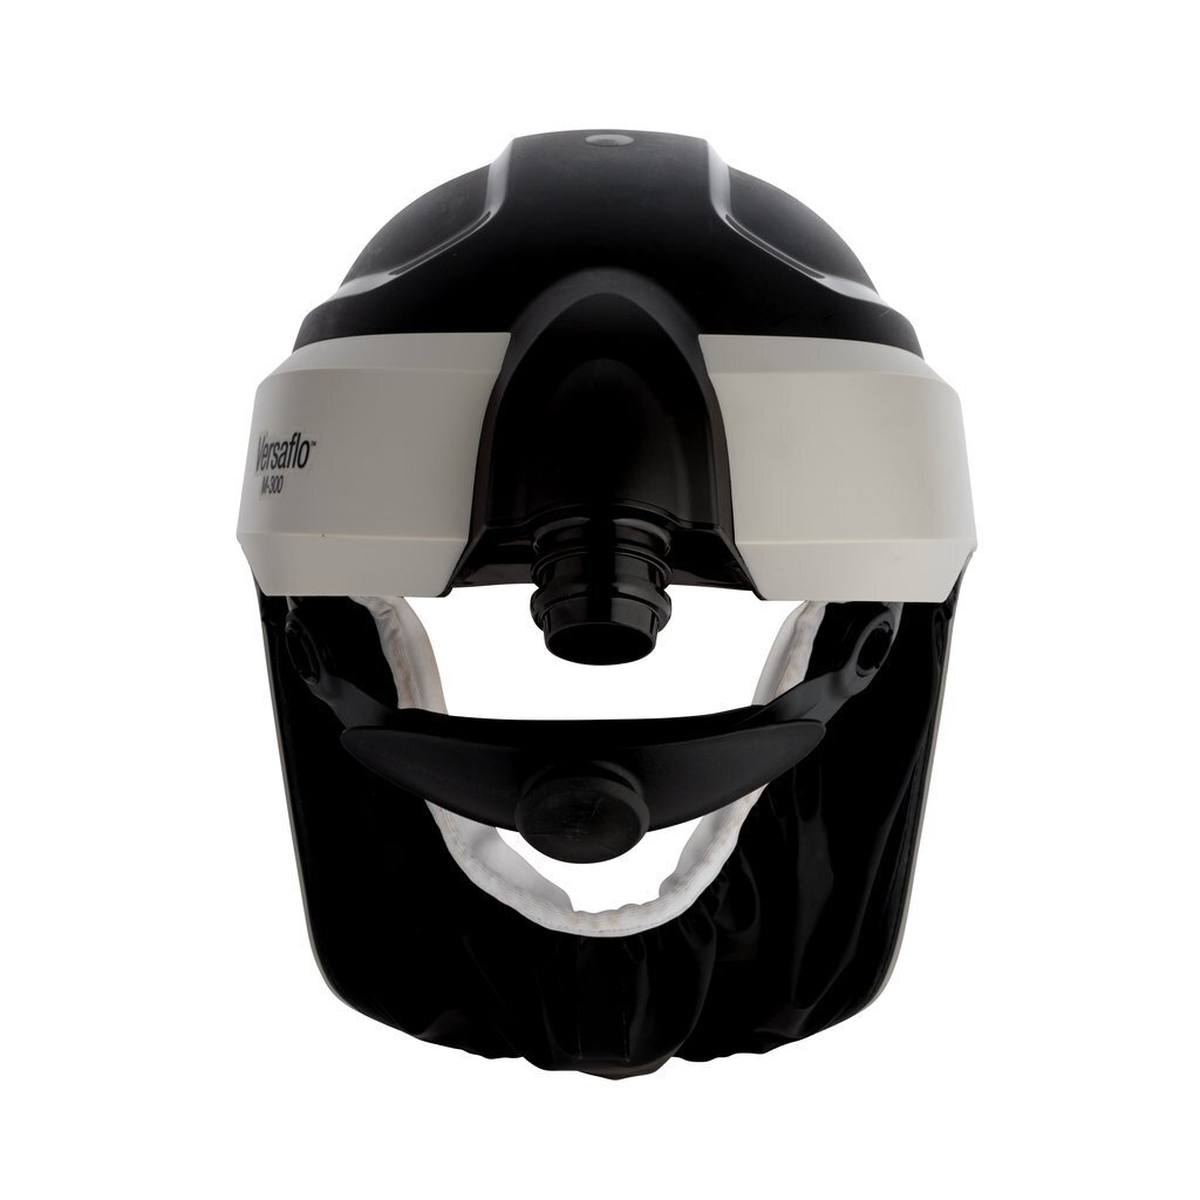 elmetto di sicurezza 3M Versaflo M306 con guarnizione facciale comfort e visiera in policarbonato, trasparente